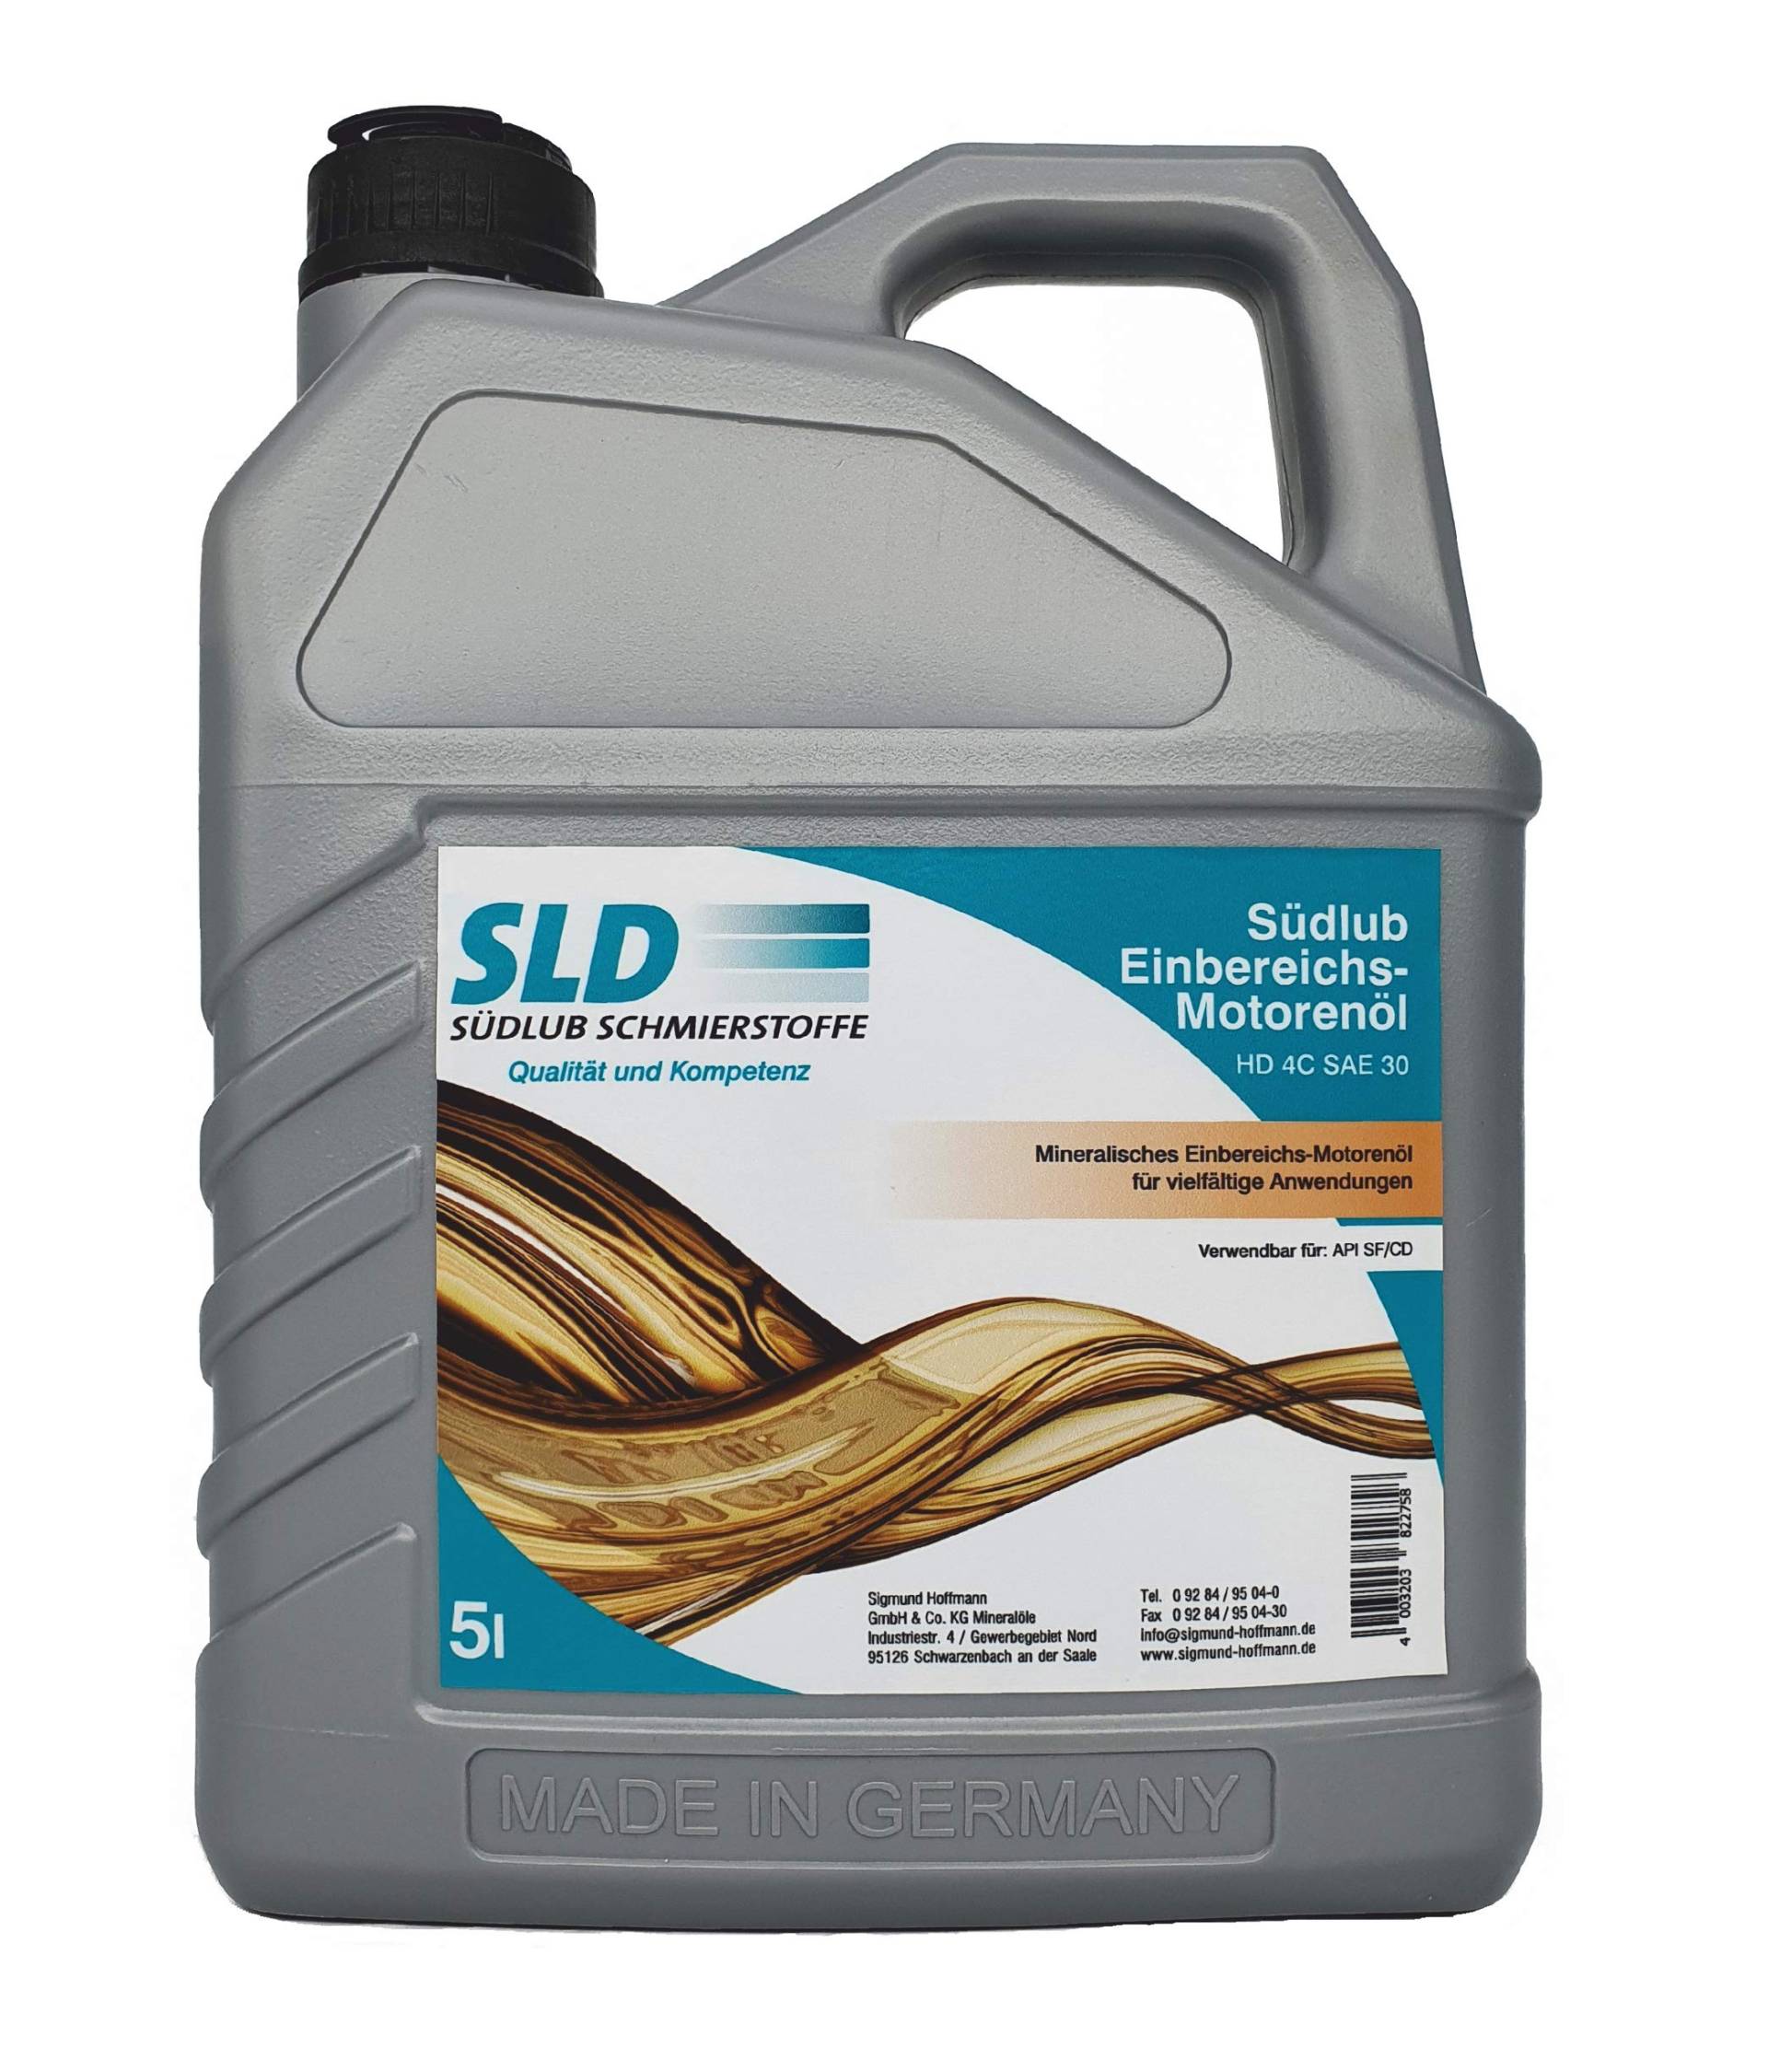 Südlub Einbereichs-Motorenöl HD 4C SAE 30W, 5 Liter von SLD Südlub Schmierstoffe